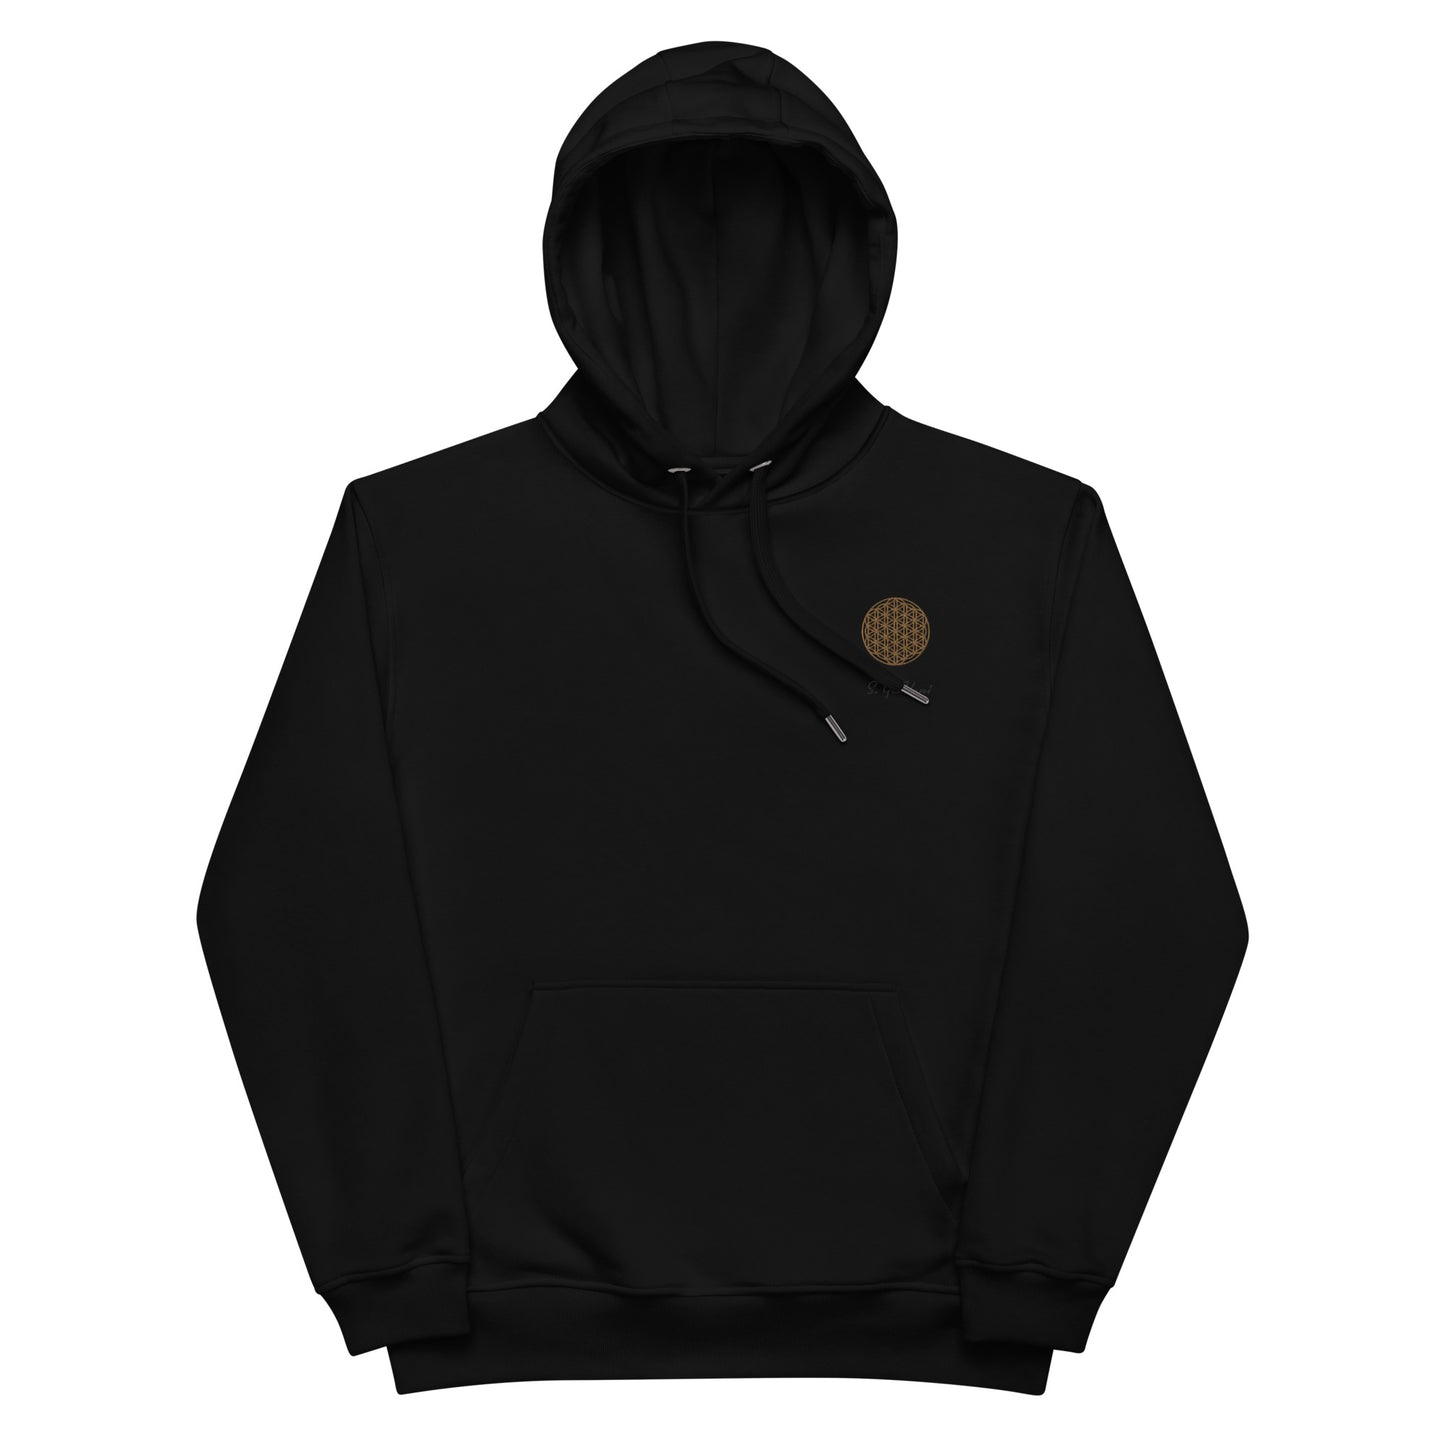 S. GeoVani Premium eco hoodie